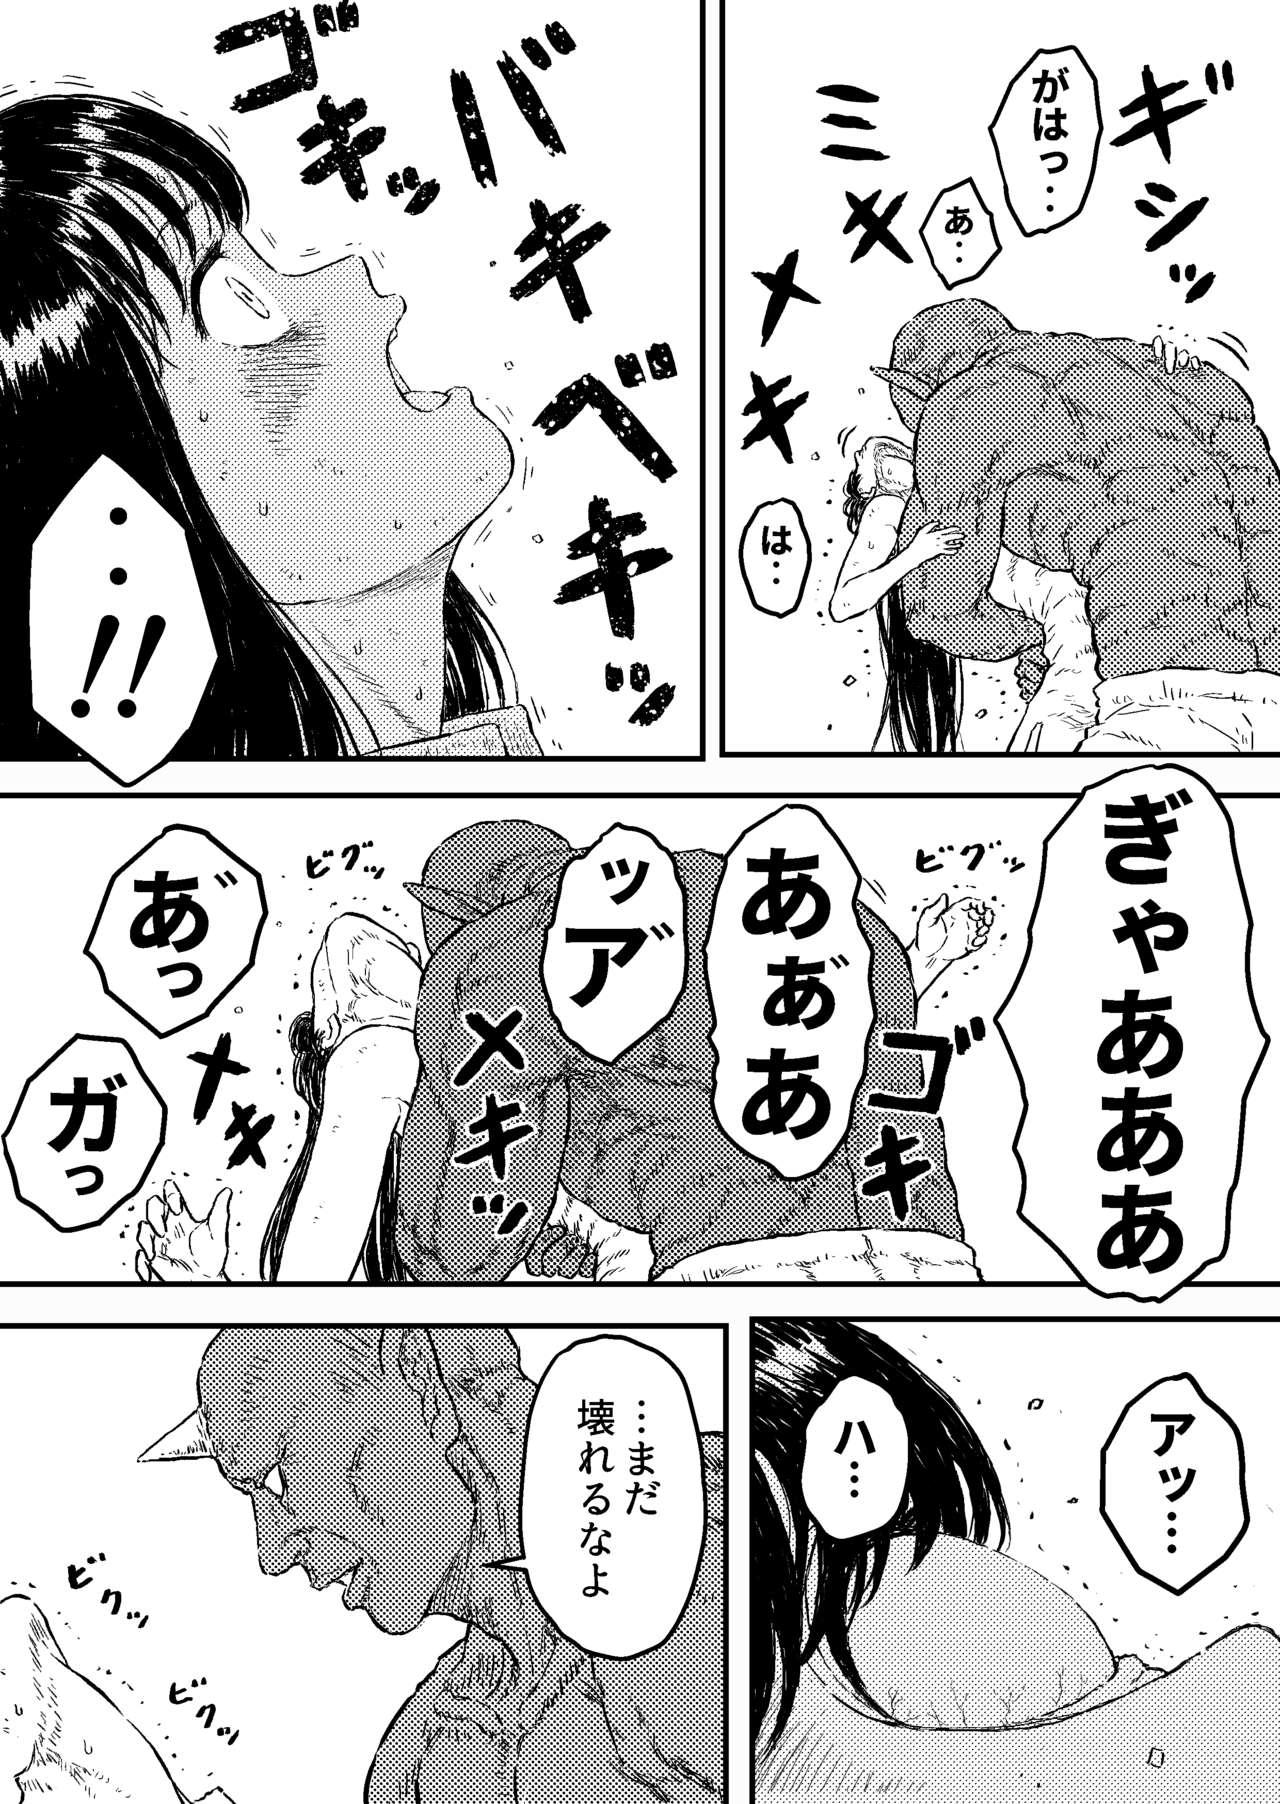 Mama Sutoranguru Gold 4 『Seigi no hiroin kosatsu subete o kake te tataka ta shojo no unmei』 - Original Old Young - Page 7